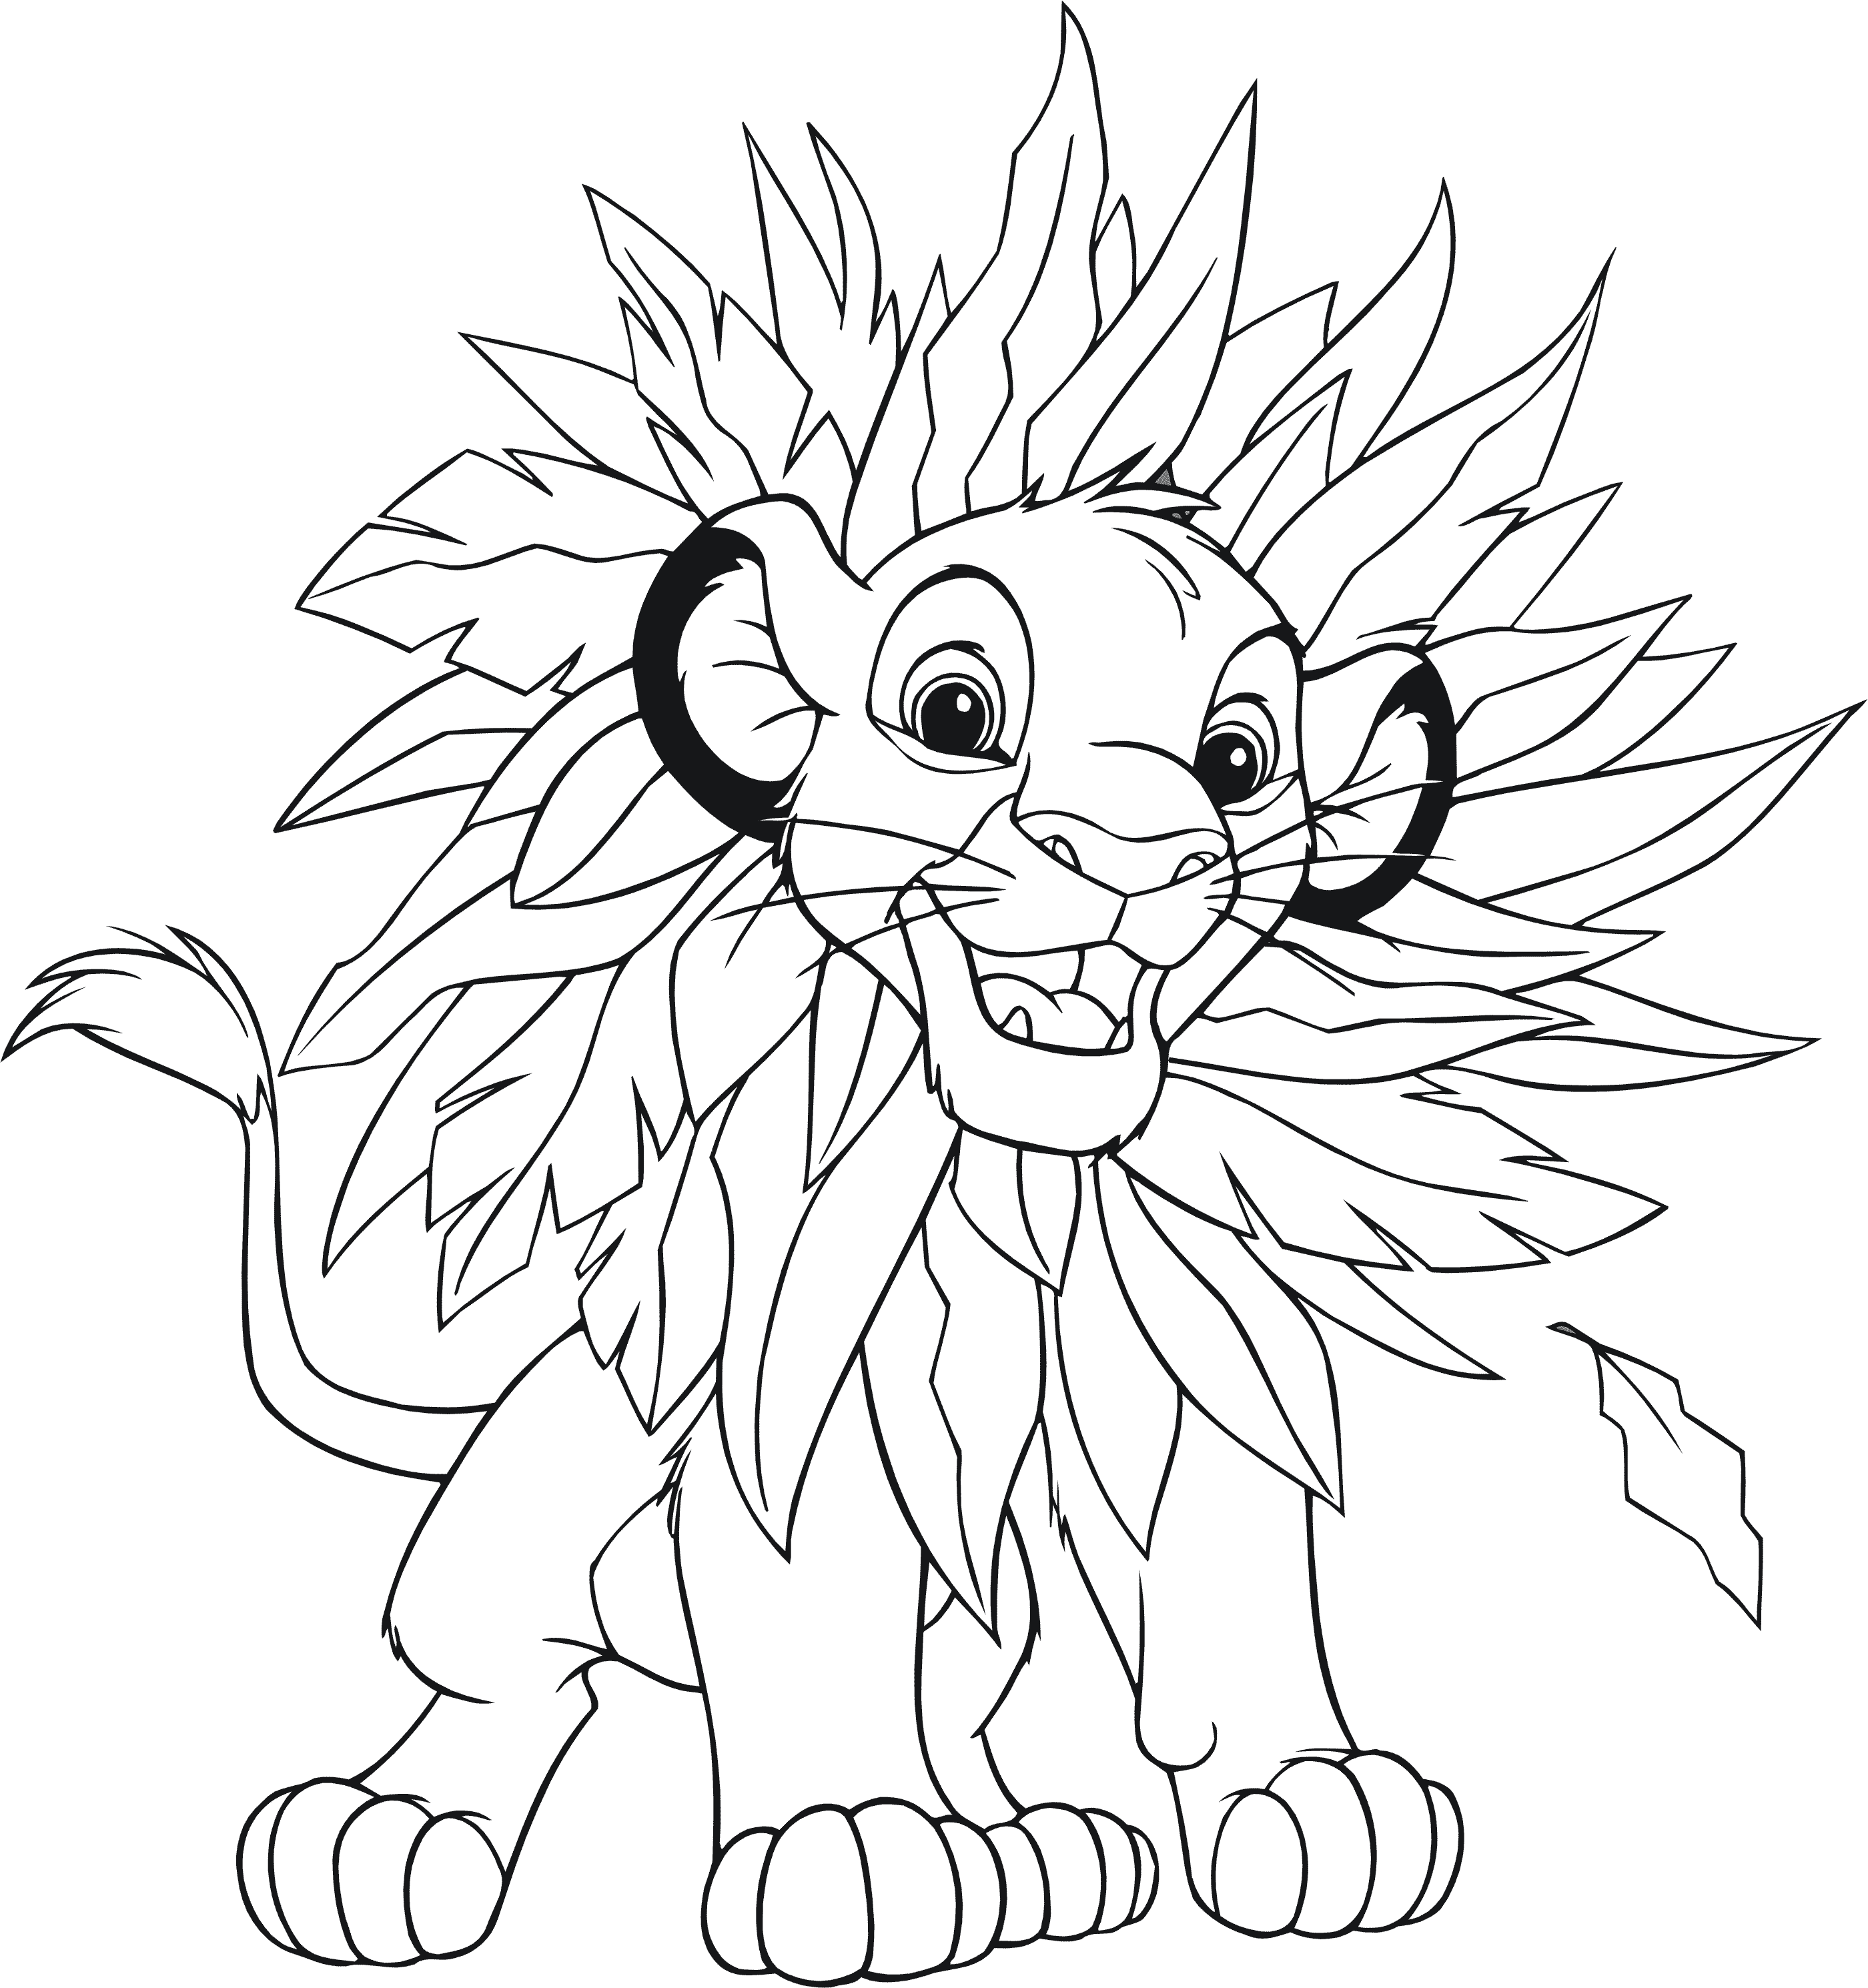 Раскраски из мультфильма Король лев (Lion King)